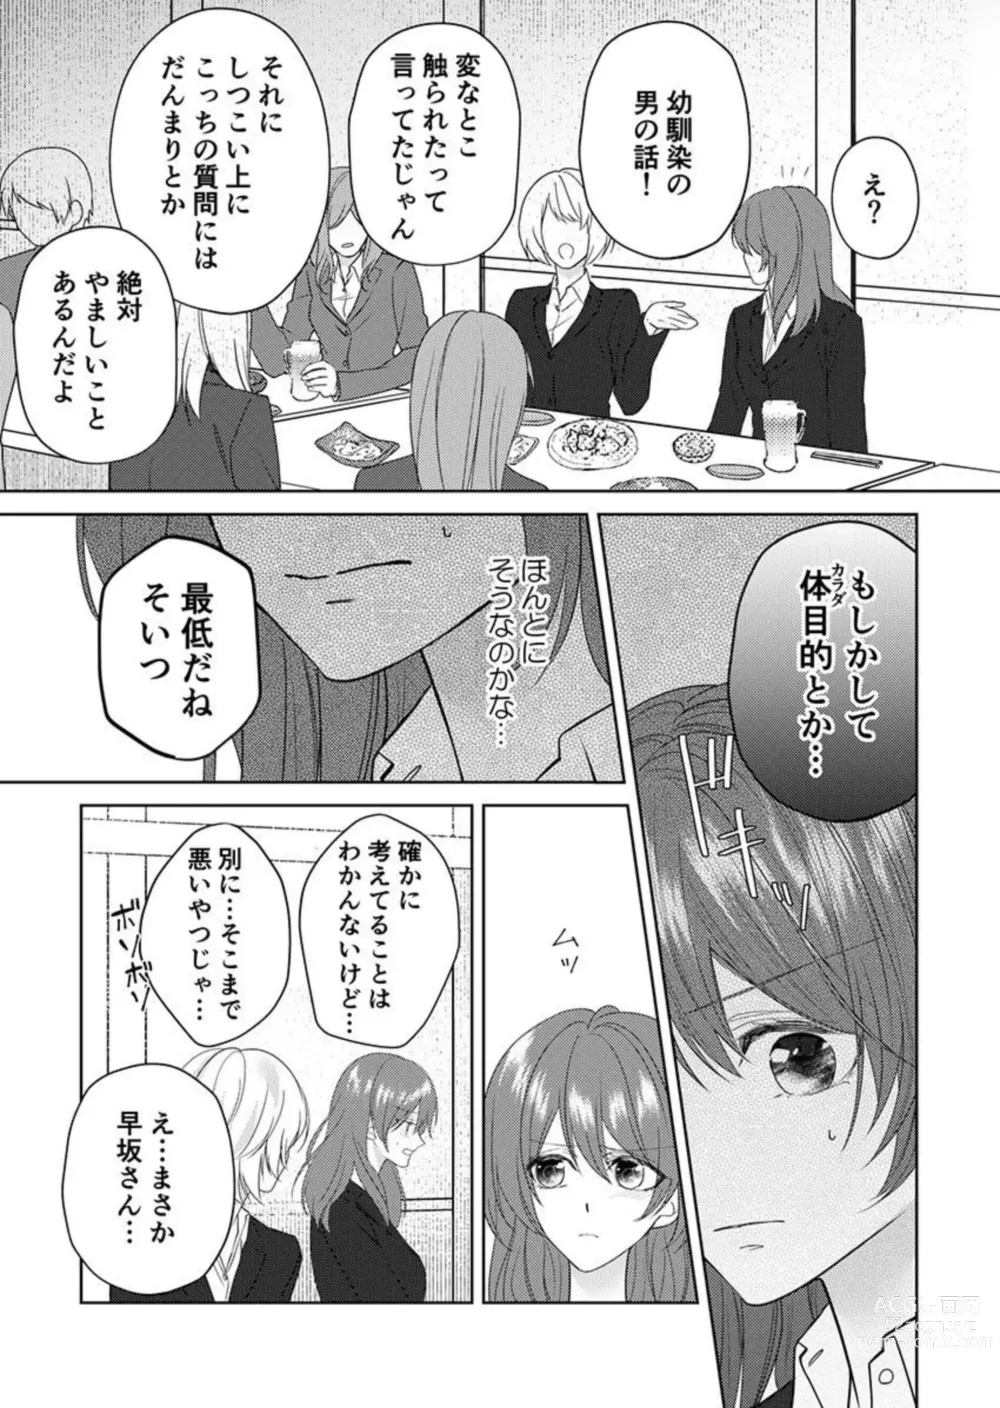 Page 51 of manga Osananajimi wa Mou Yameta.